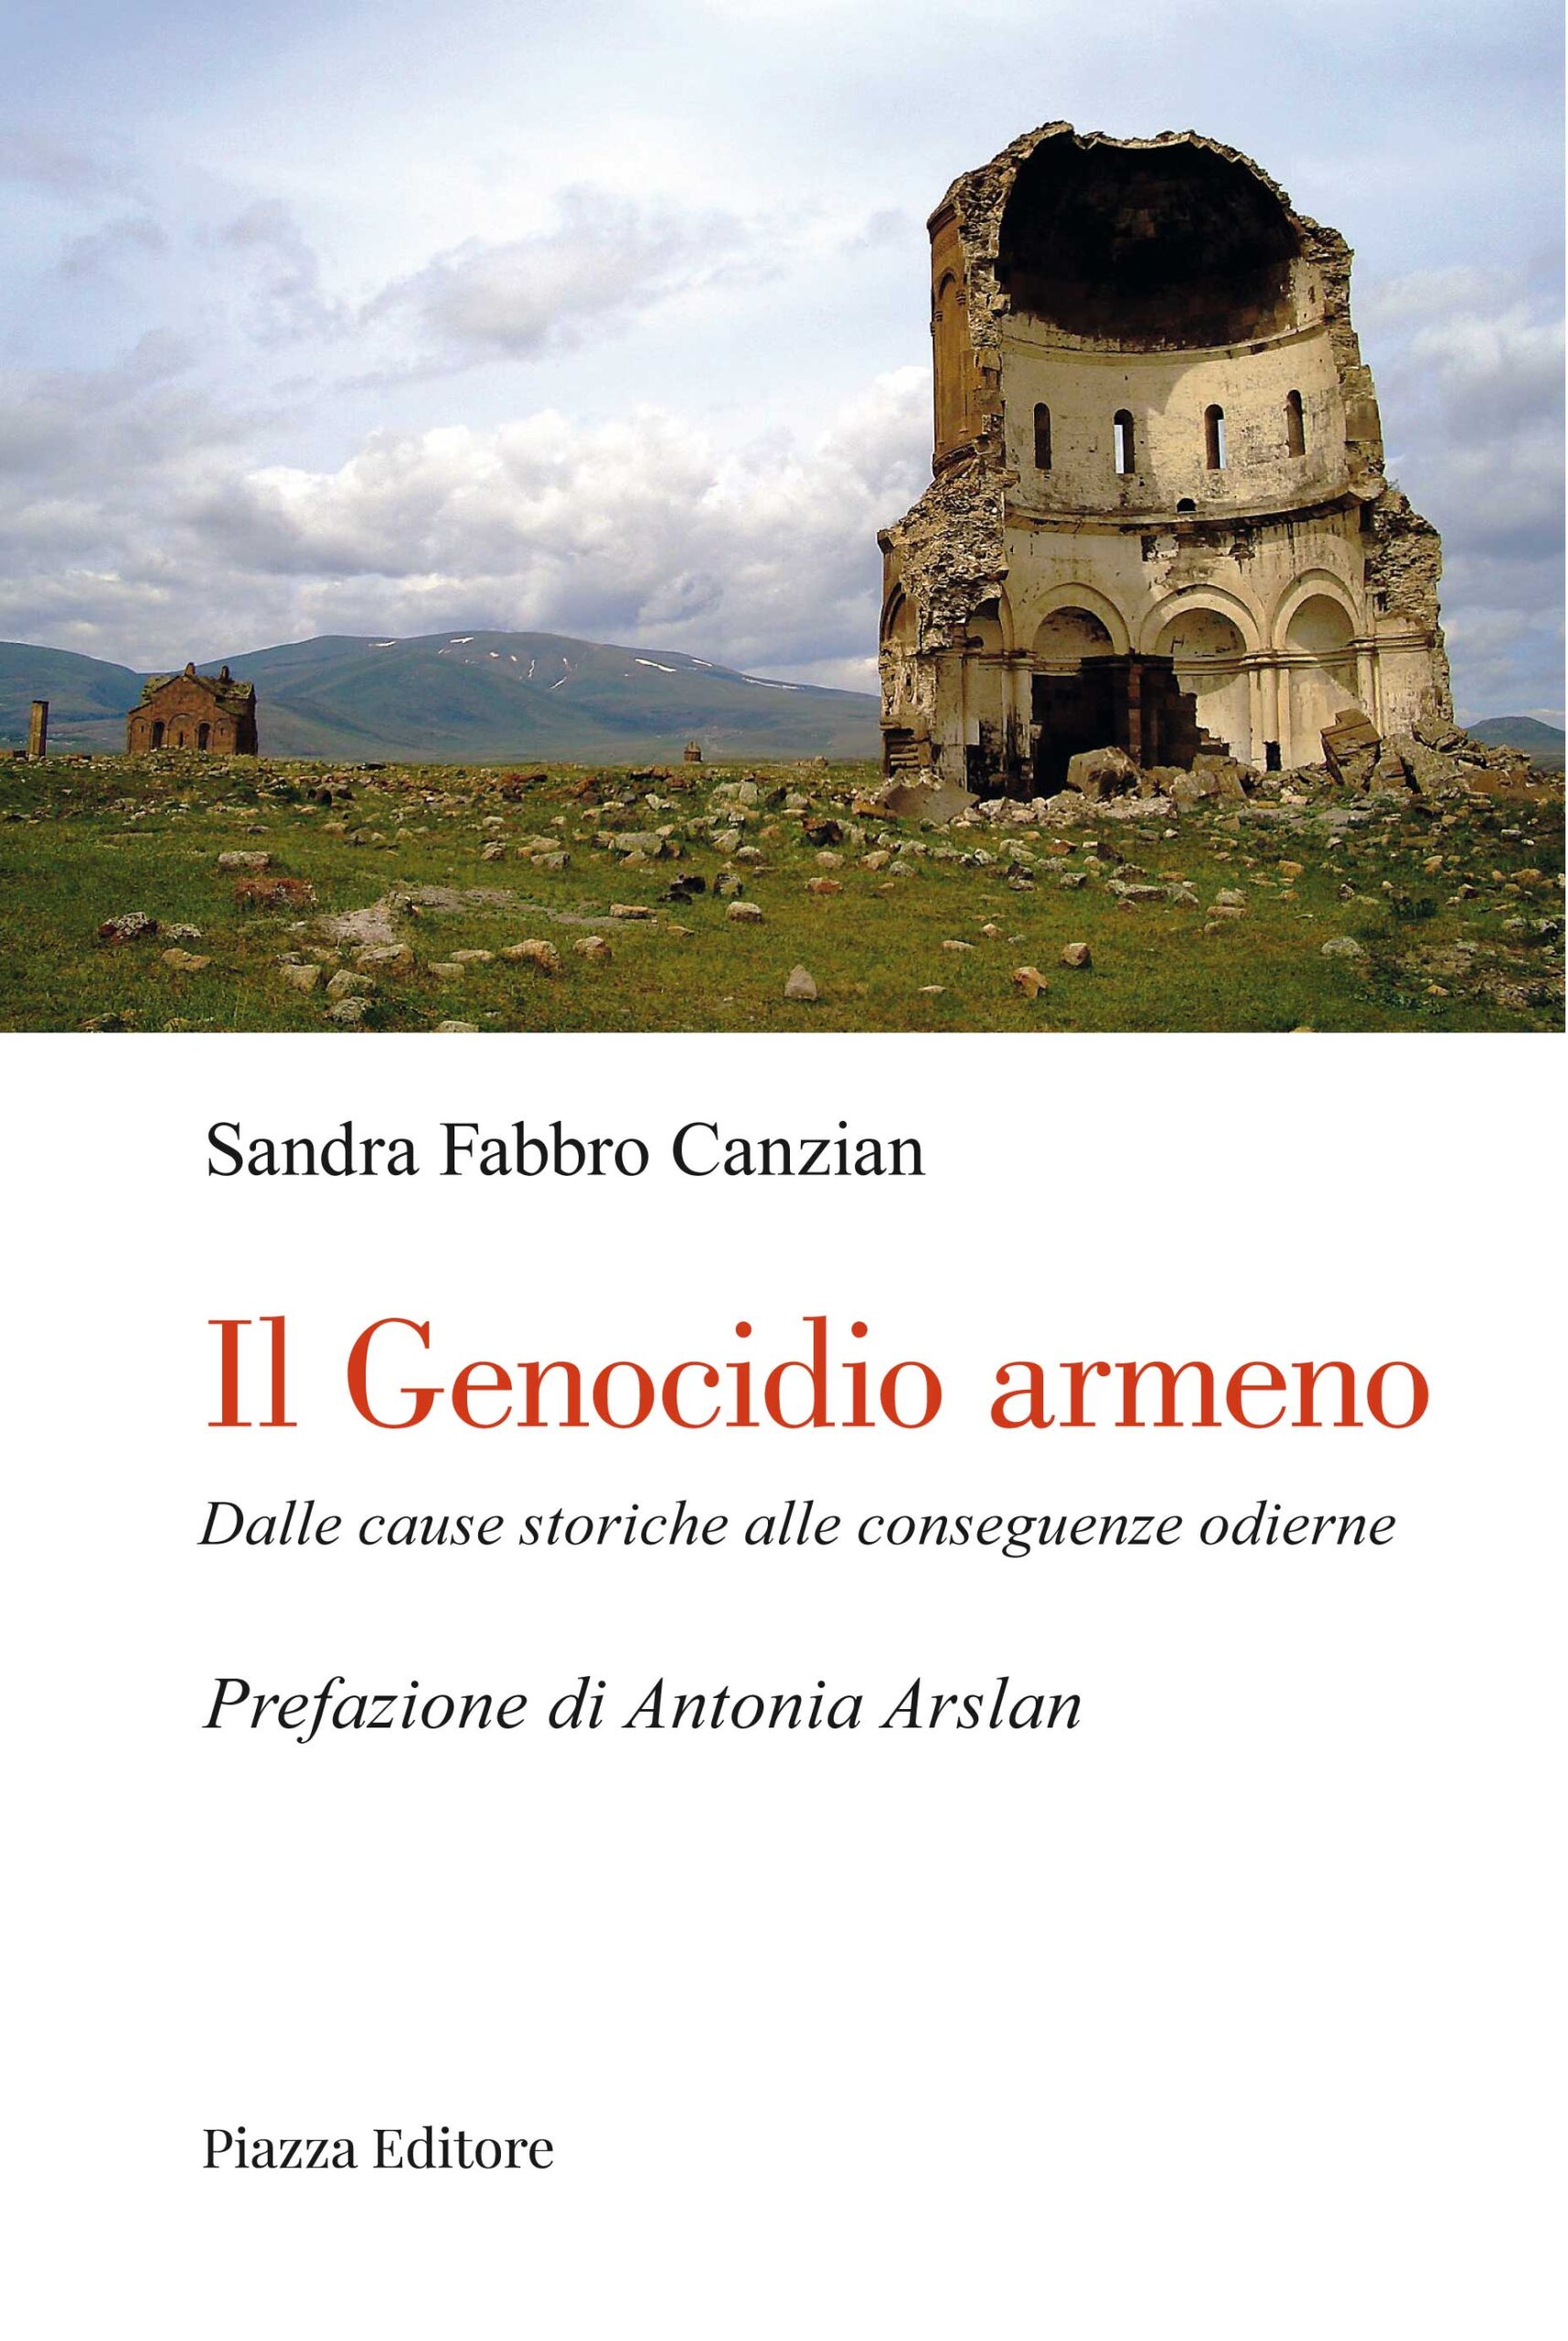 Scopri di più sull'articolo Il Genocidio armeno